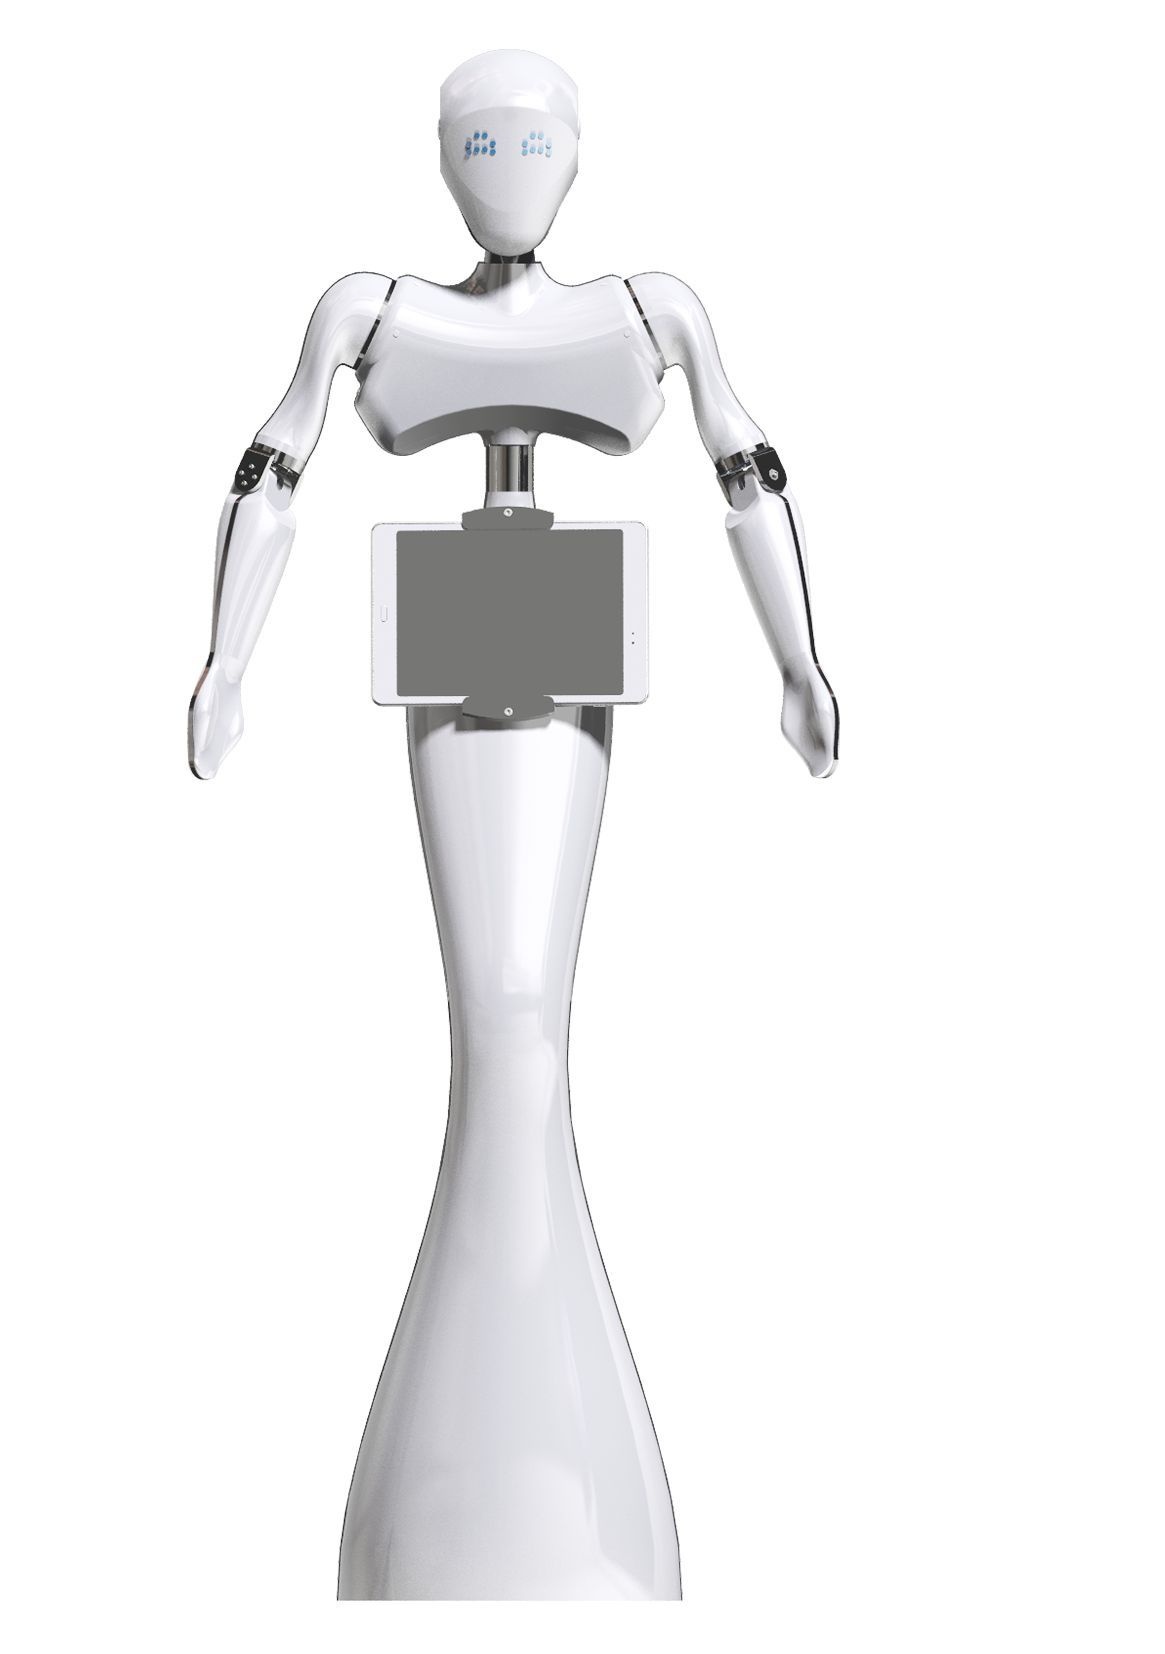 La jeune société française Event Bots, basée à Rouen, conçoit et fabrique des robots humanoïdes comme son robot d'accueil Tiki.